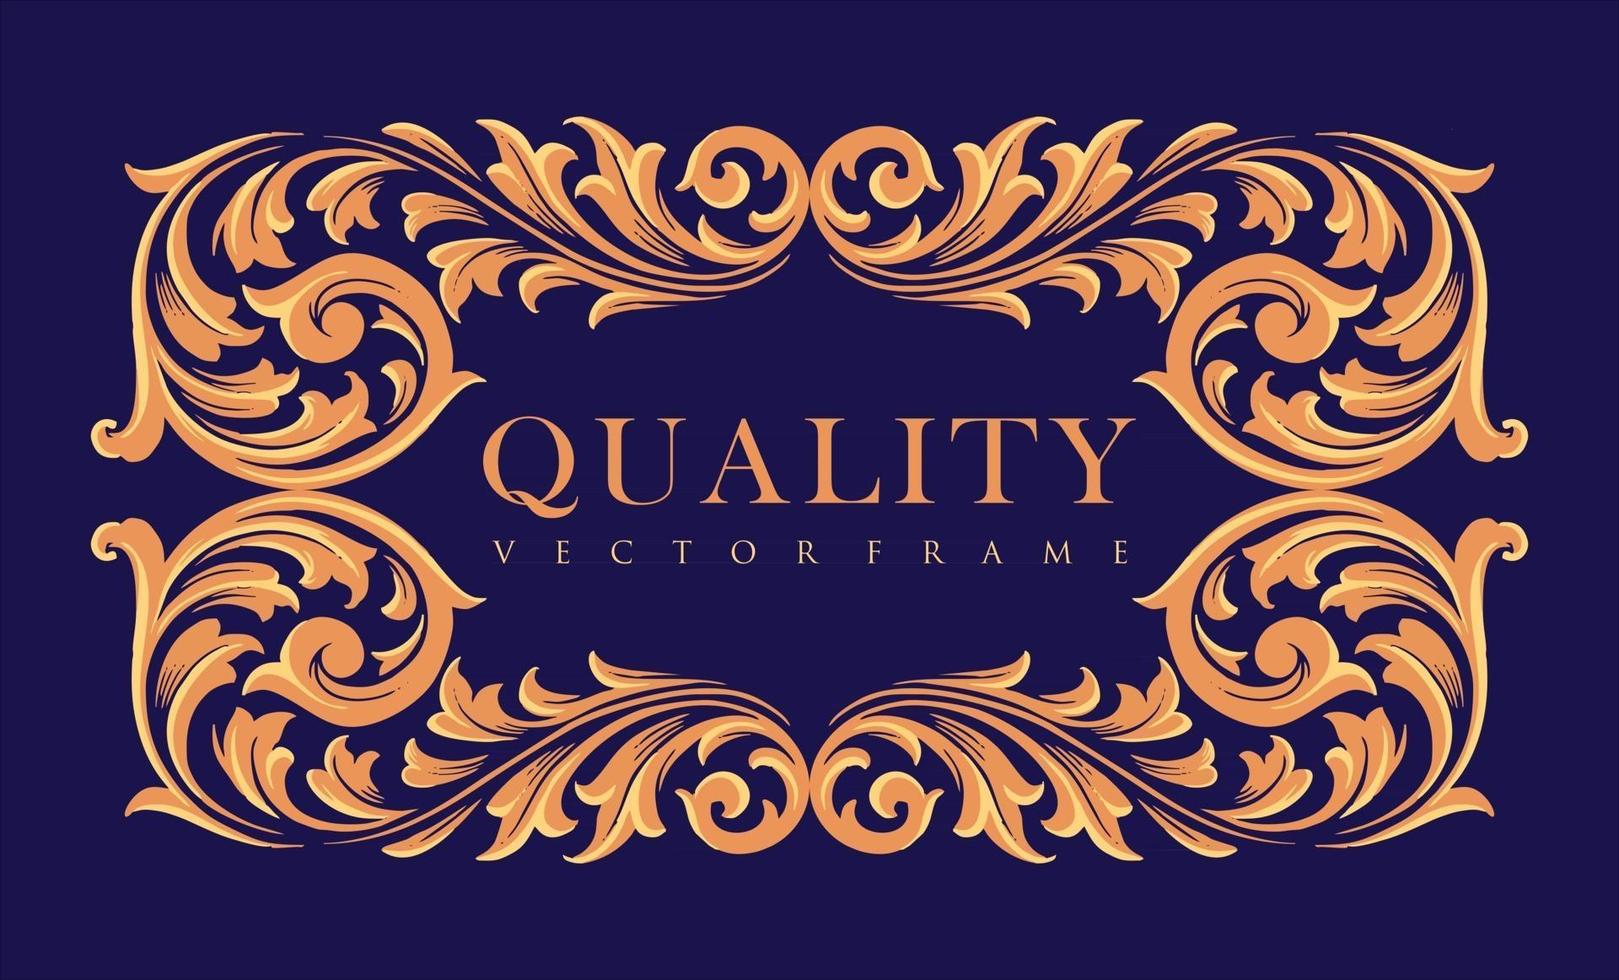 Quality Frame Gold ornaments Ellegant Label vector